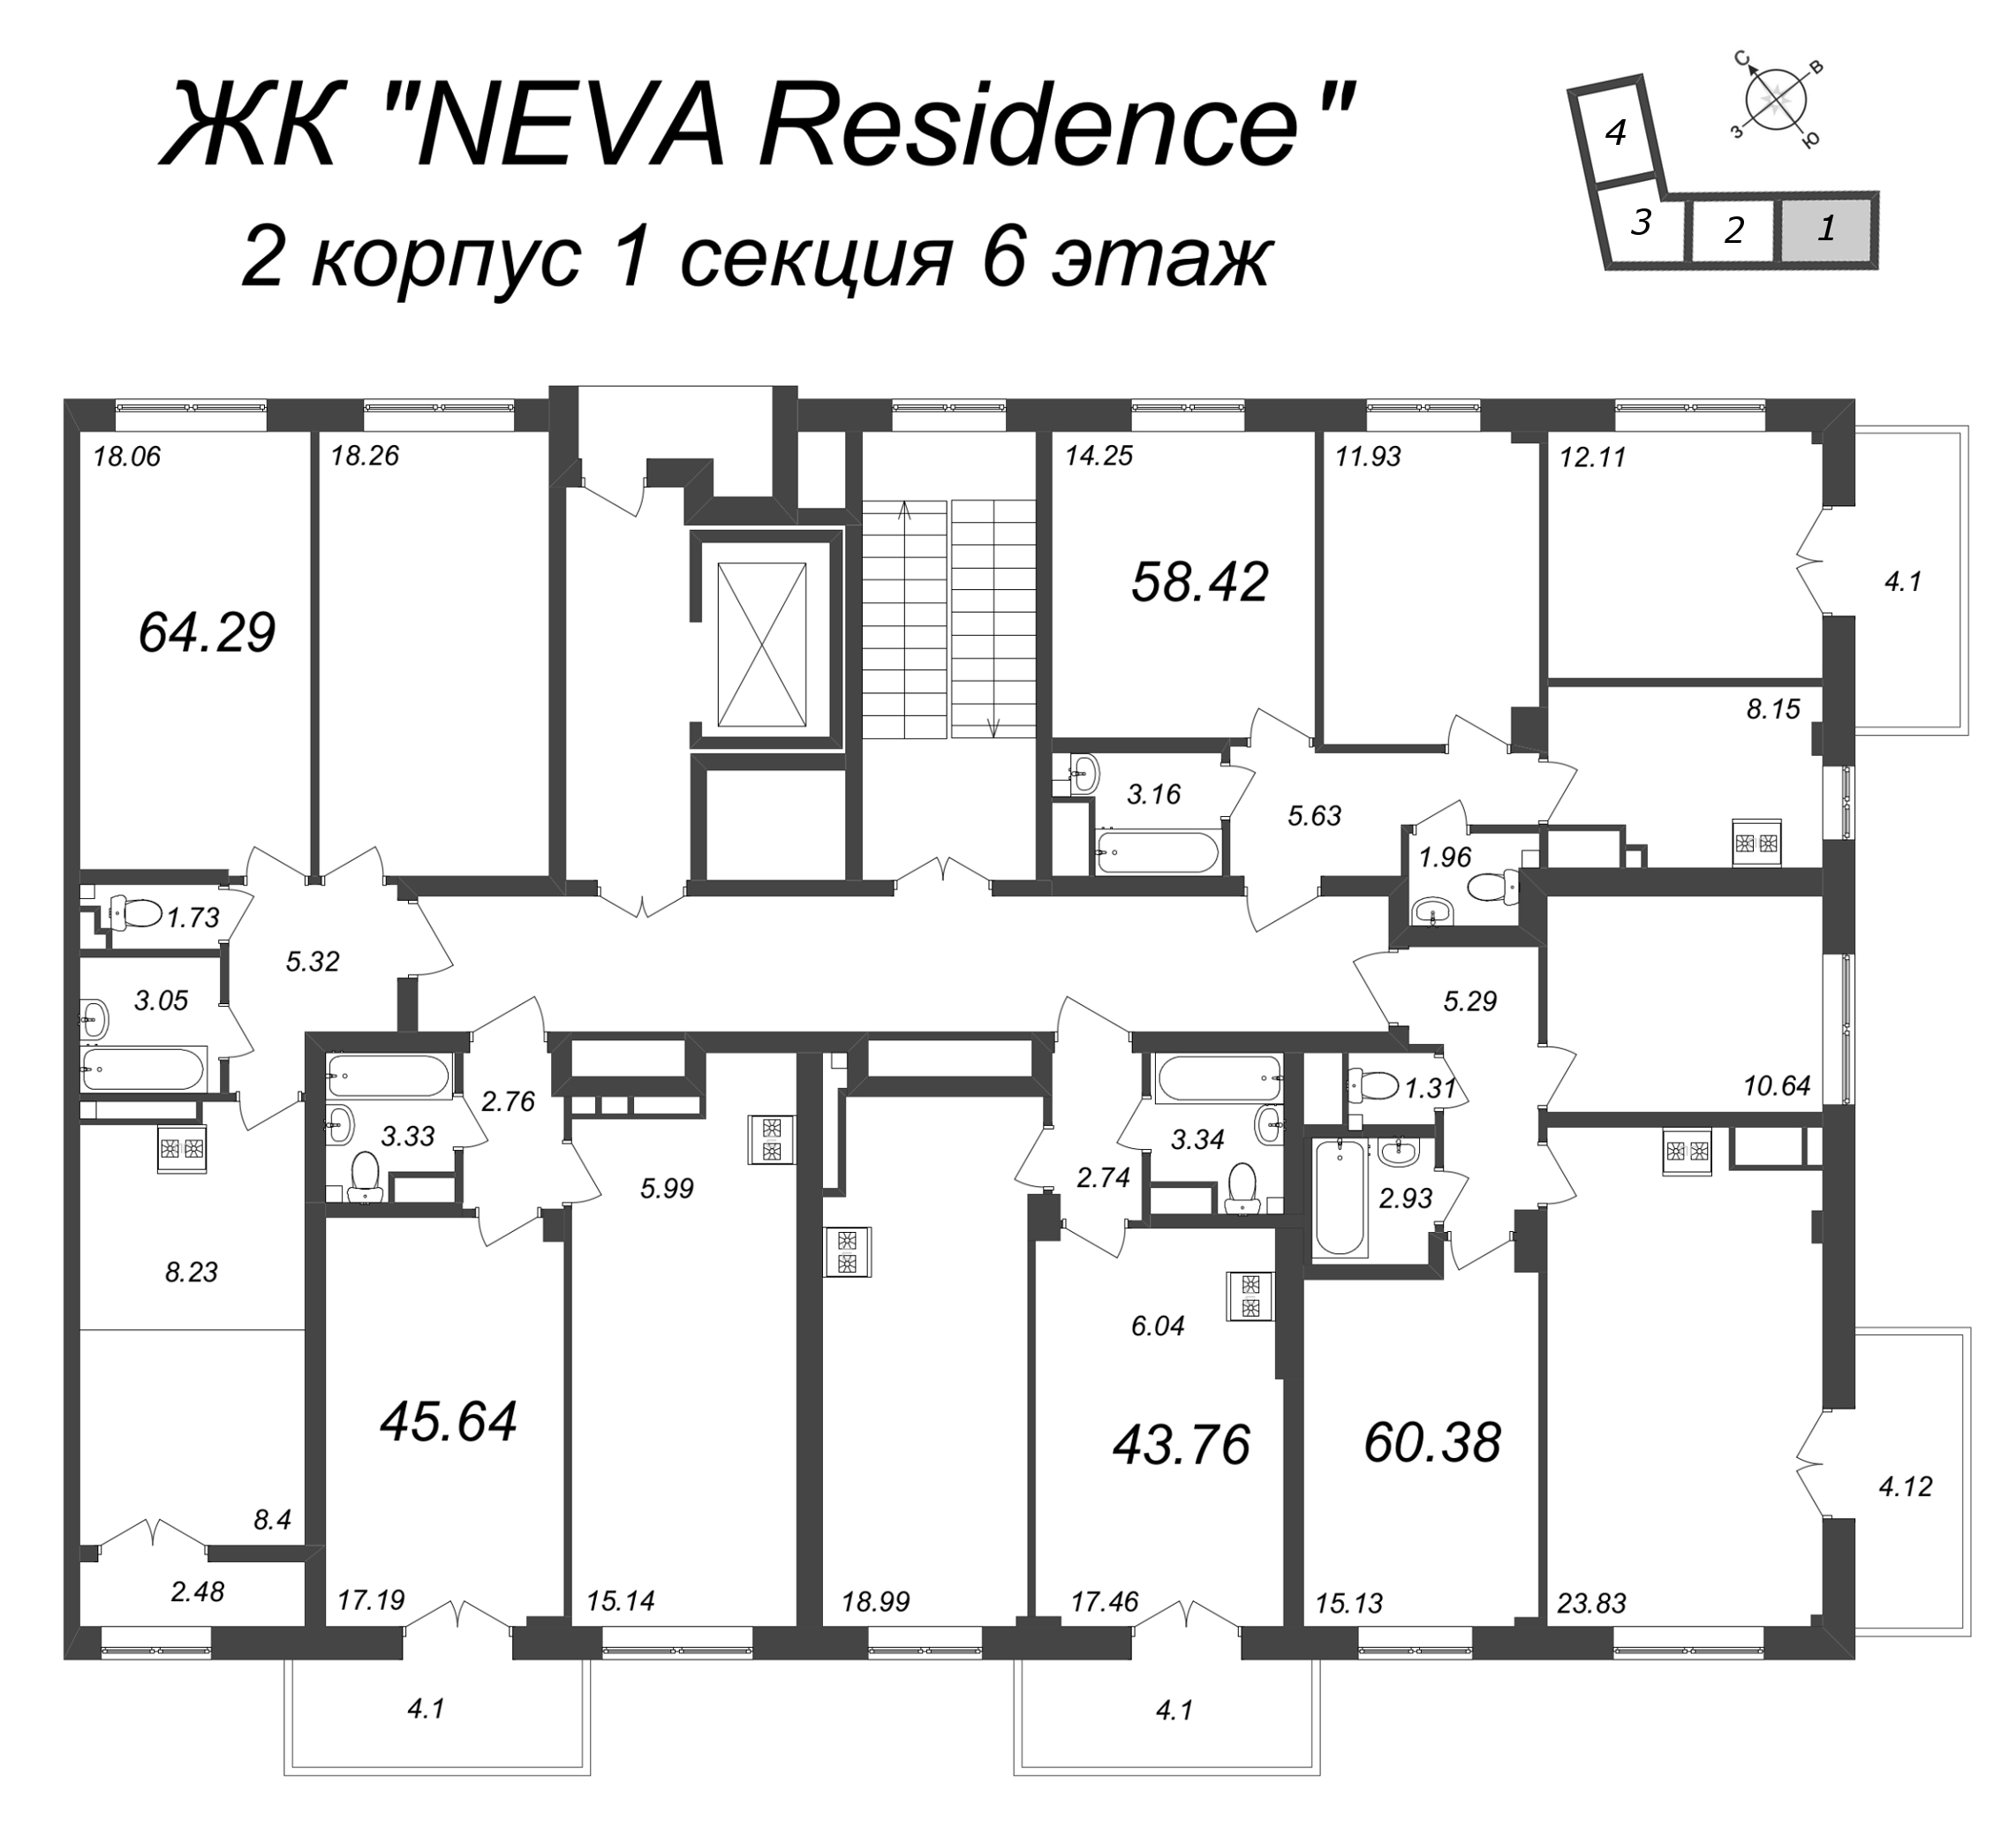 2-комнатная (Евро) квартира, 43.76 м² в ЖК "Neva Residence" - планировка этажа